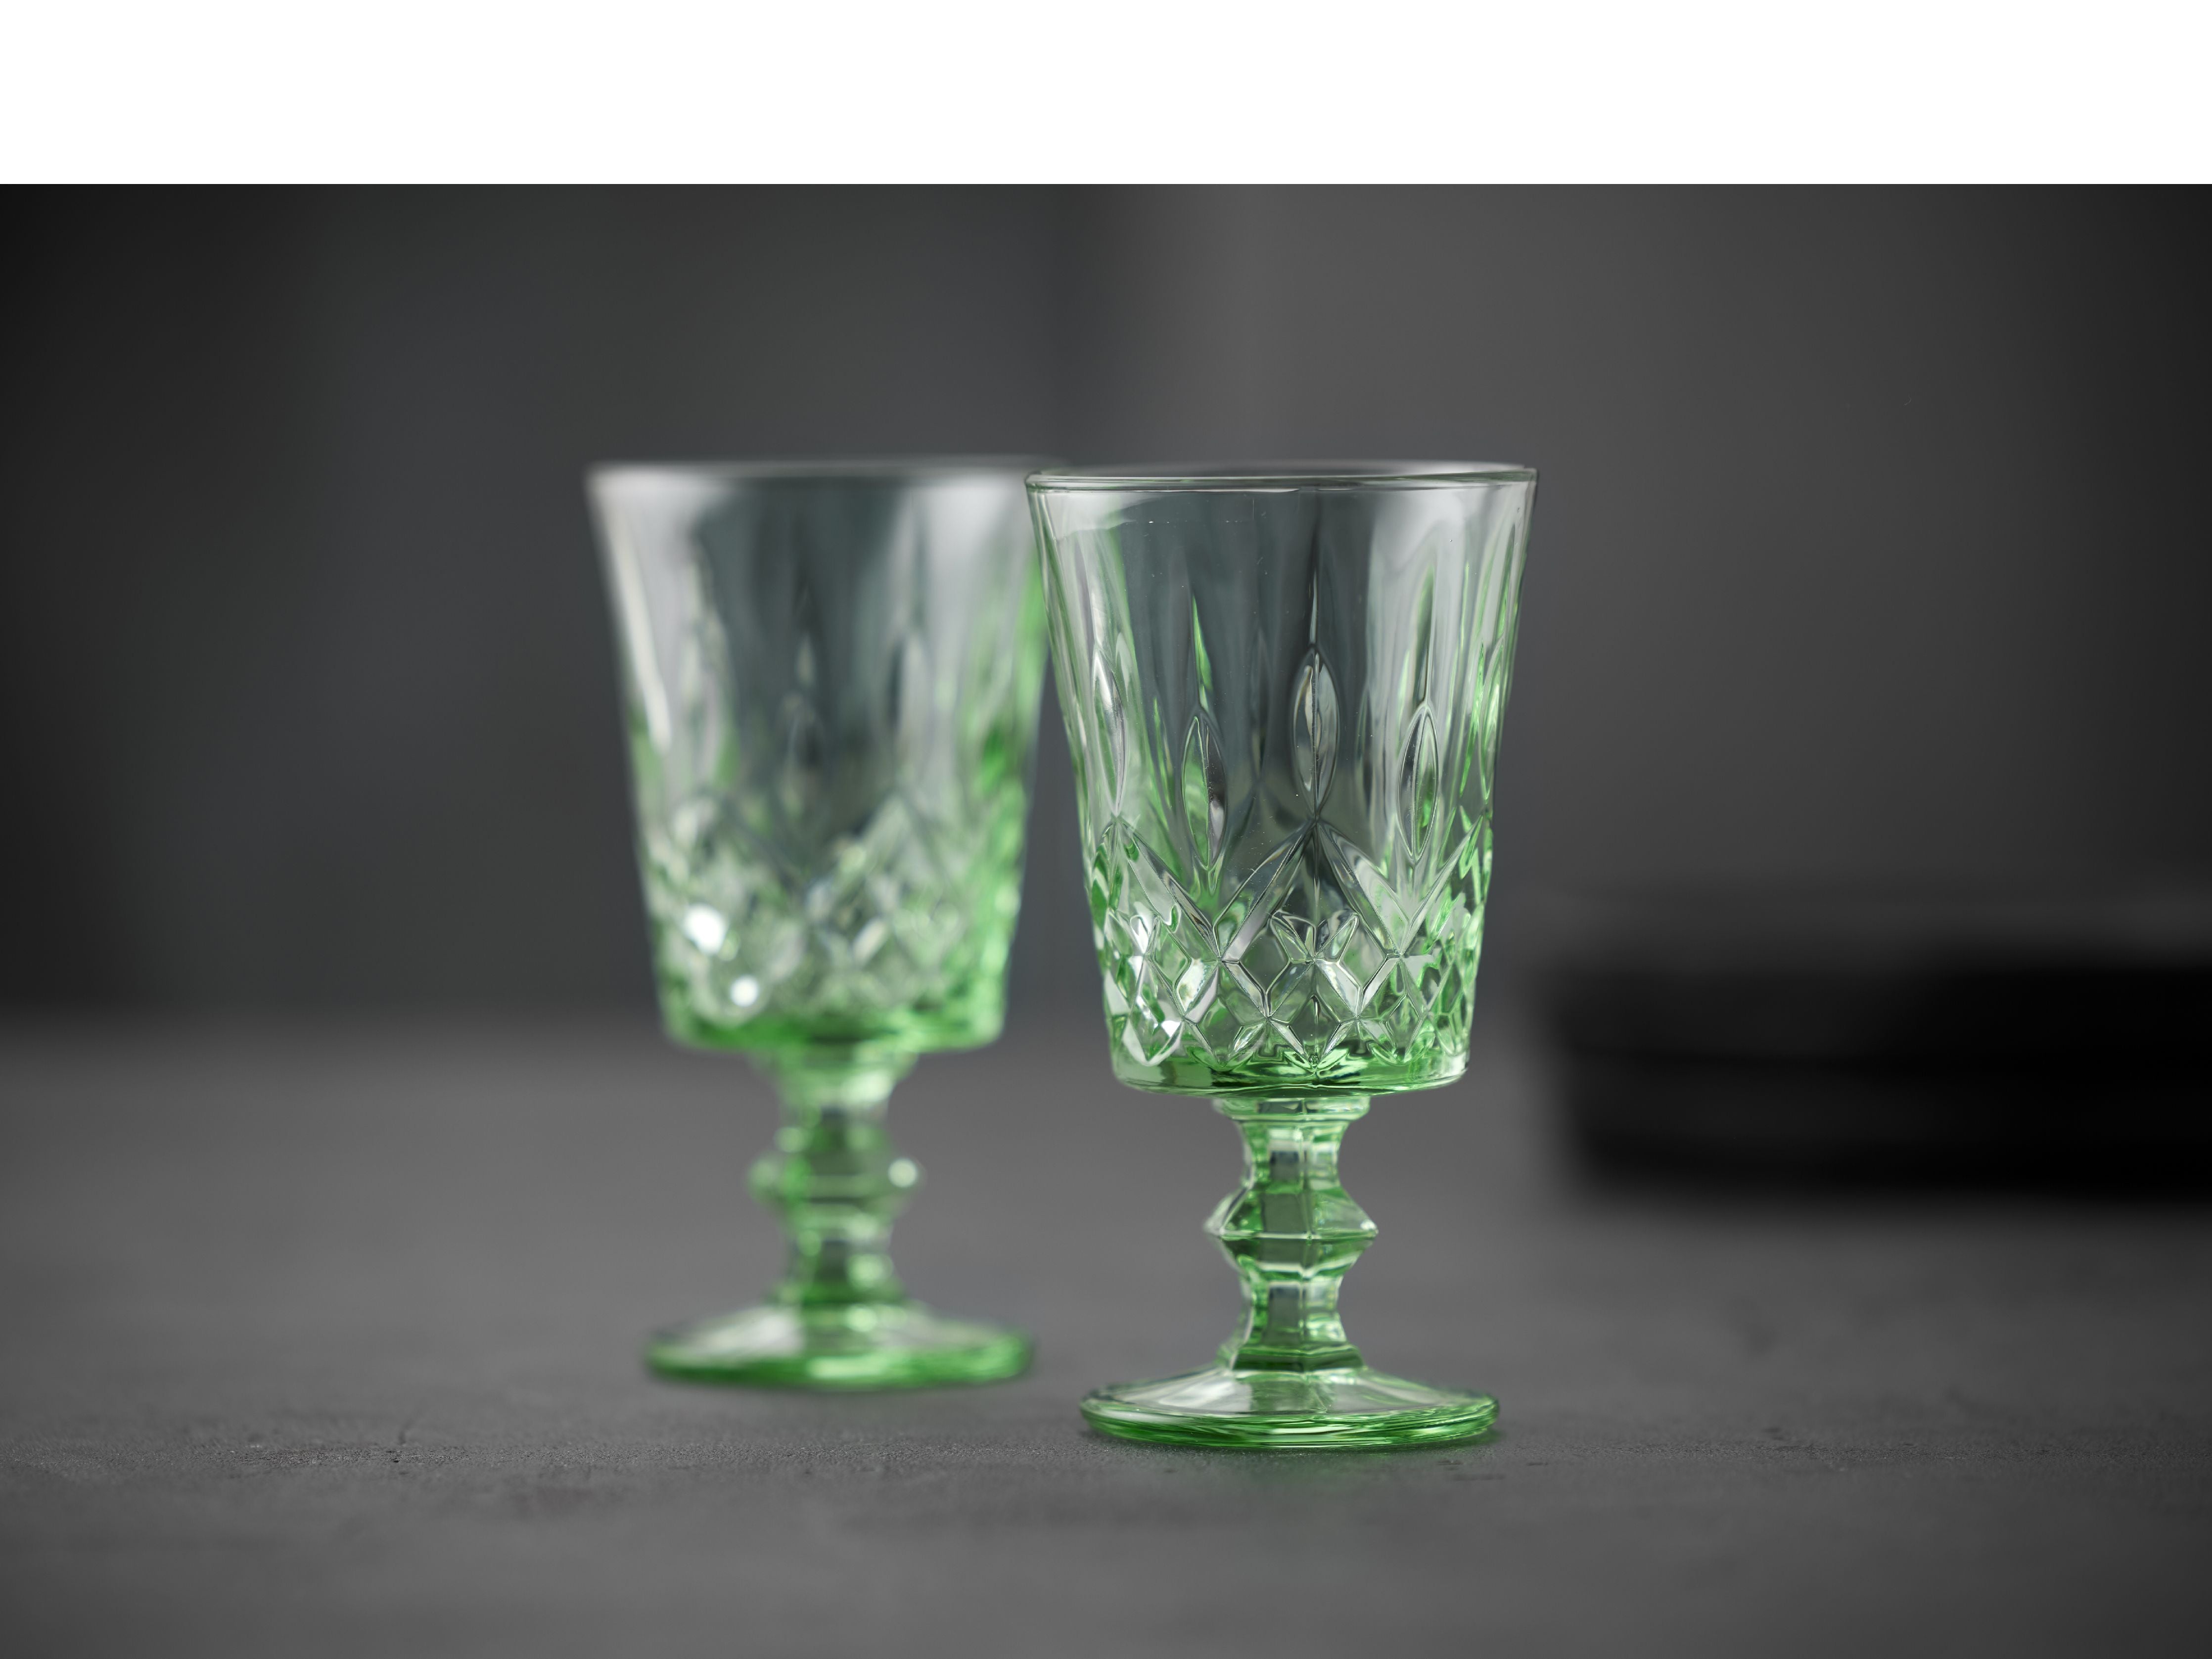 Lyngby Glas Sorrento Wine Glass 29 Cl 4 PCS., Zelená